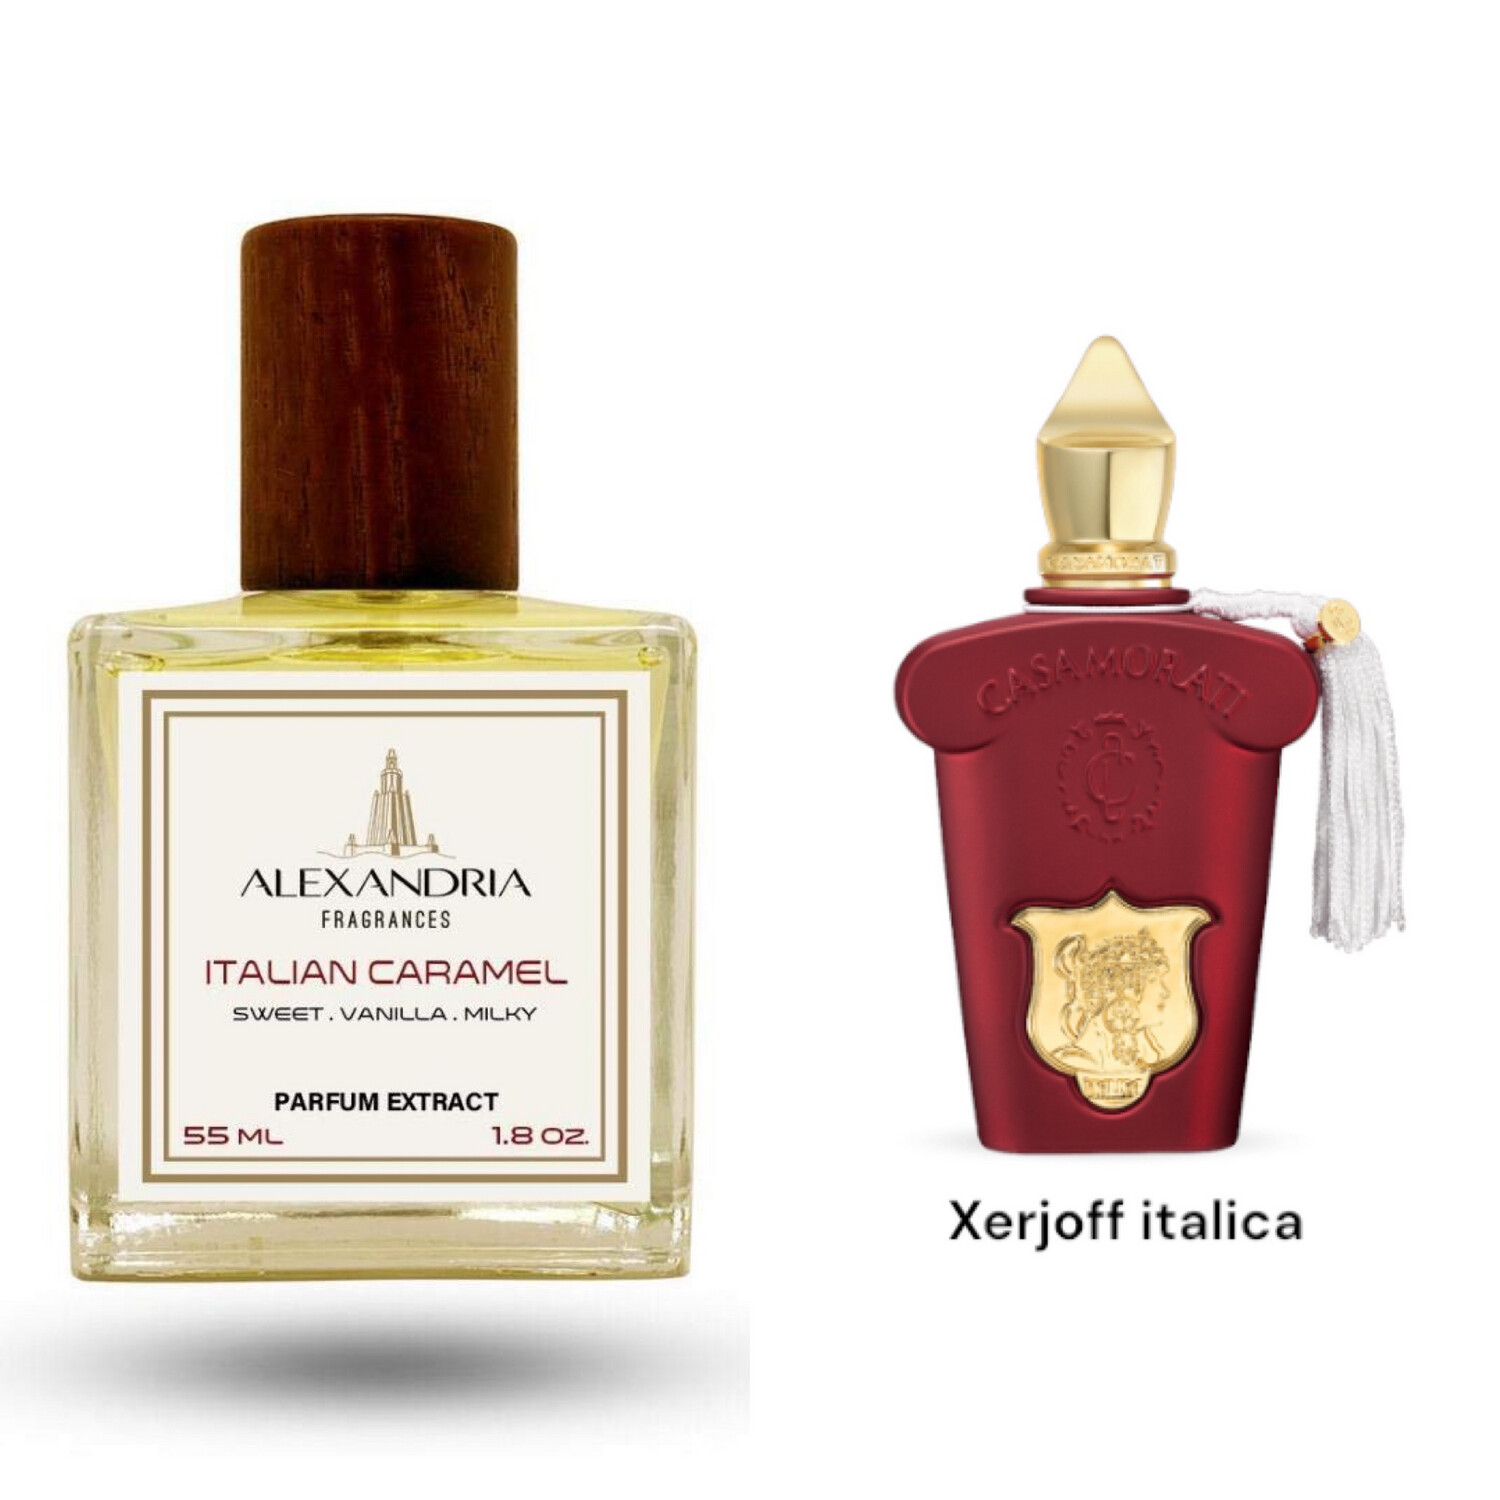 Italian Caramel Inspirado en Xerjoff Italica 55ML extracto perfume Alexandria Fragrances